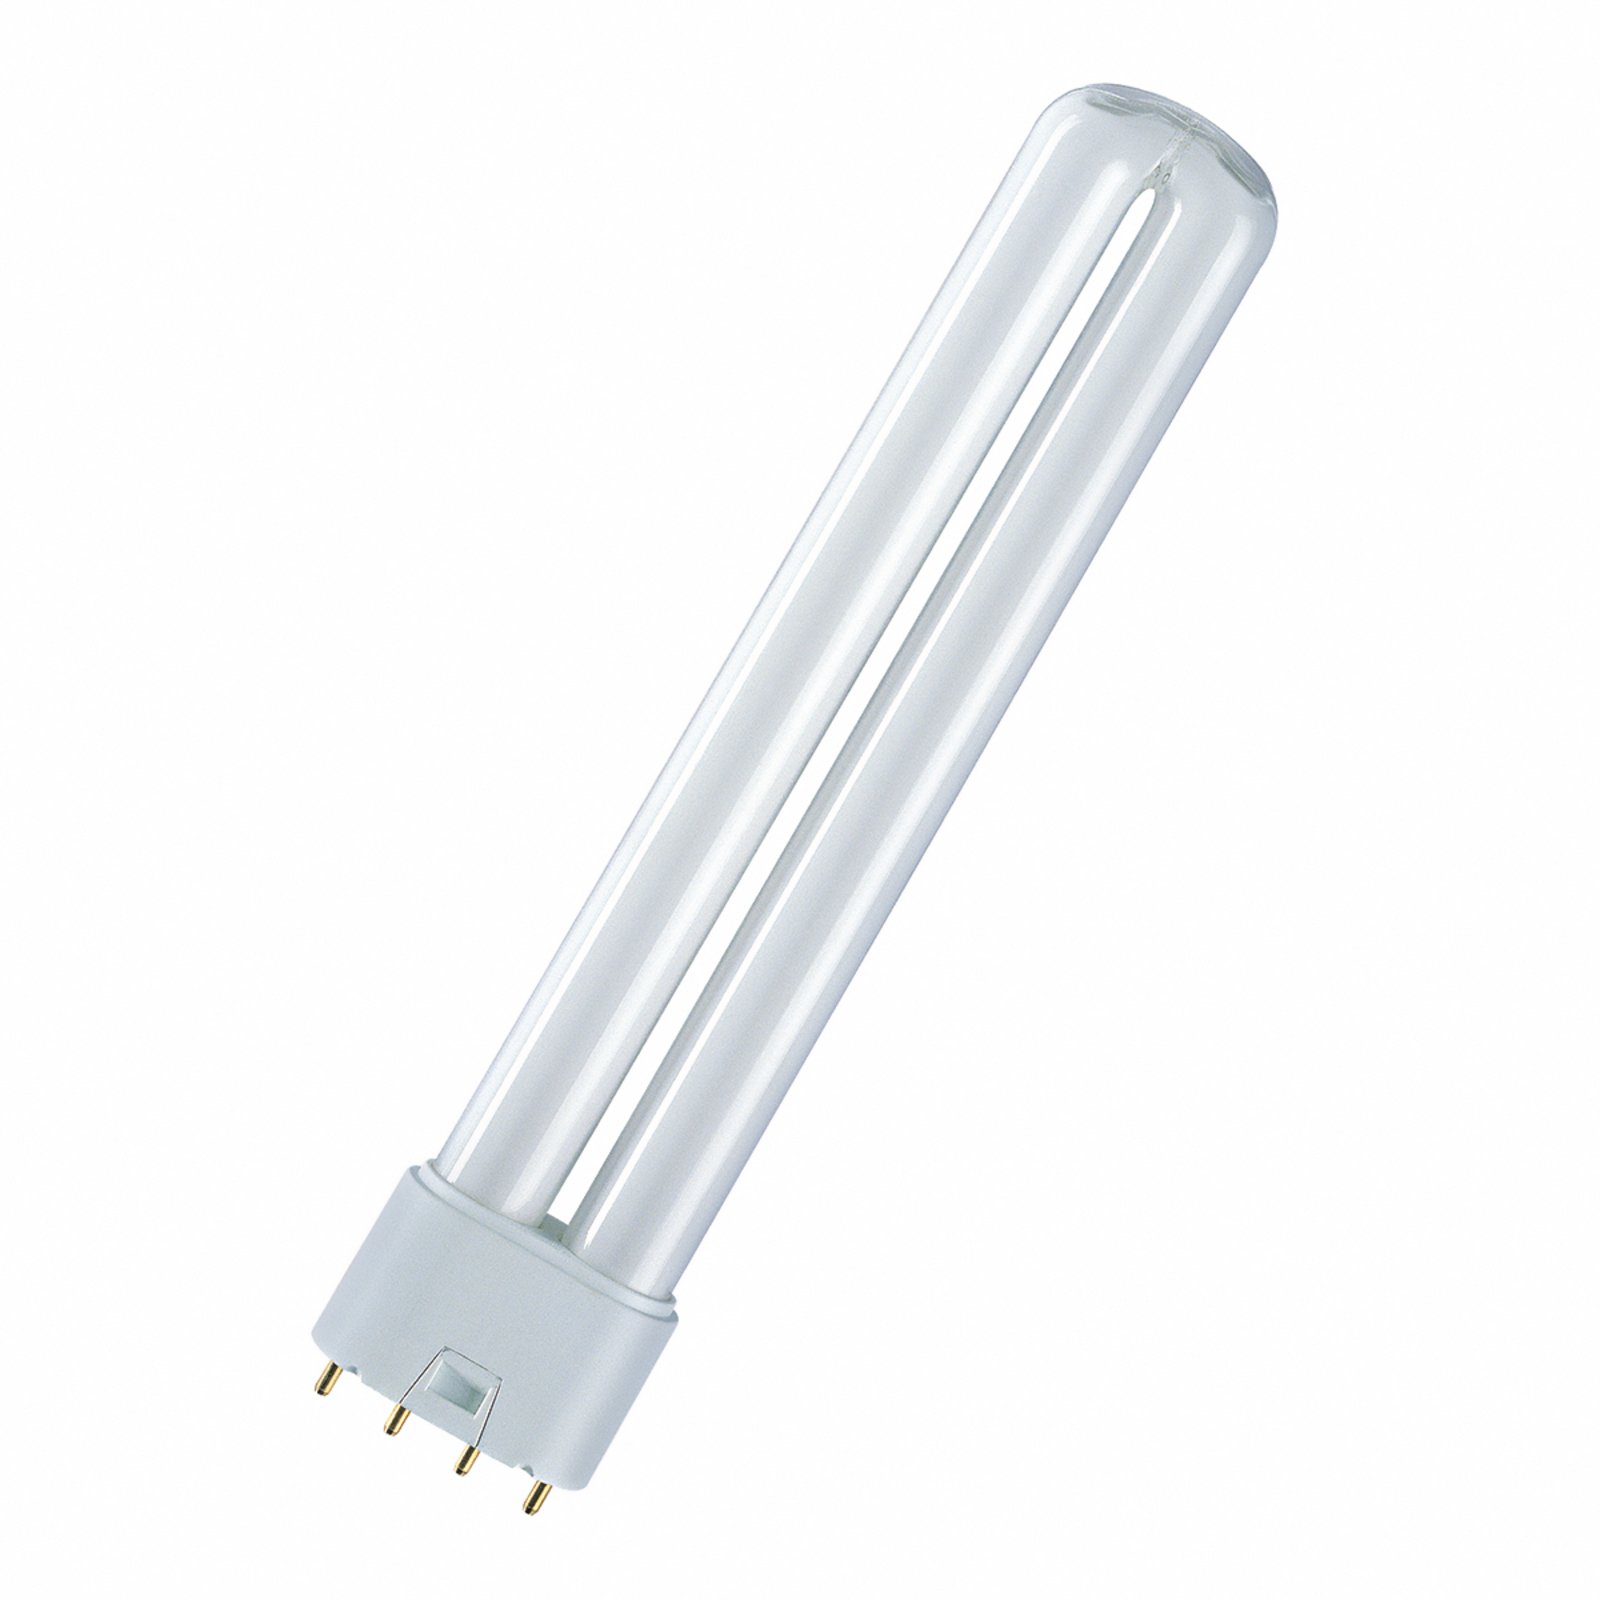 2G11 18 W 827 Dulux L compact fluorescent bulb